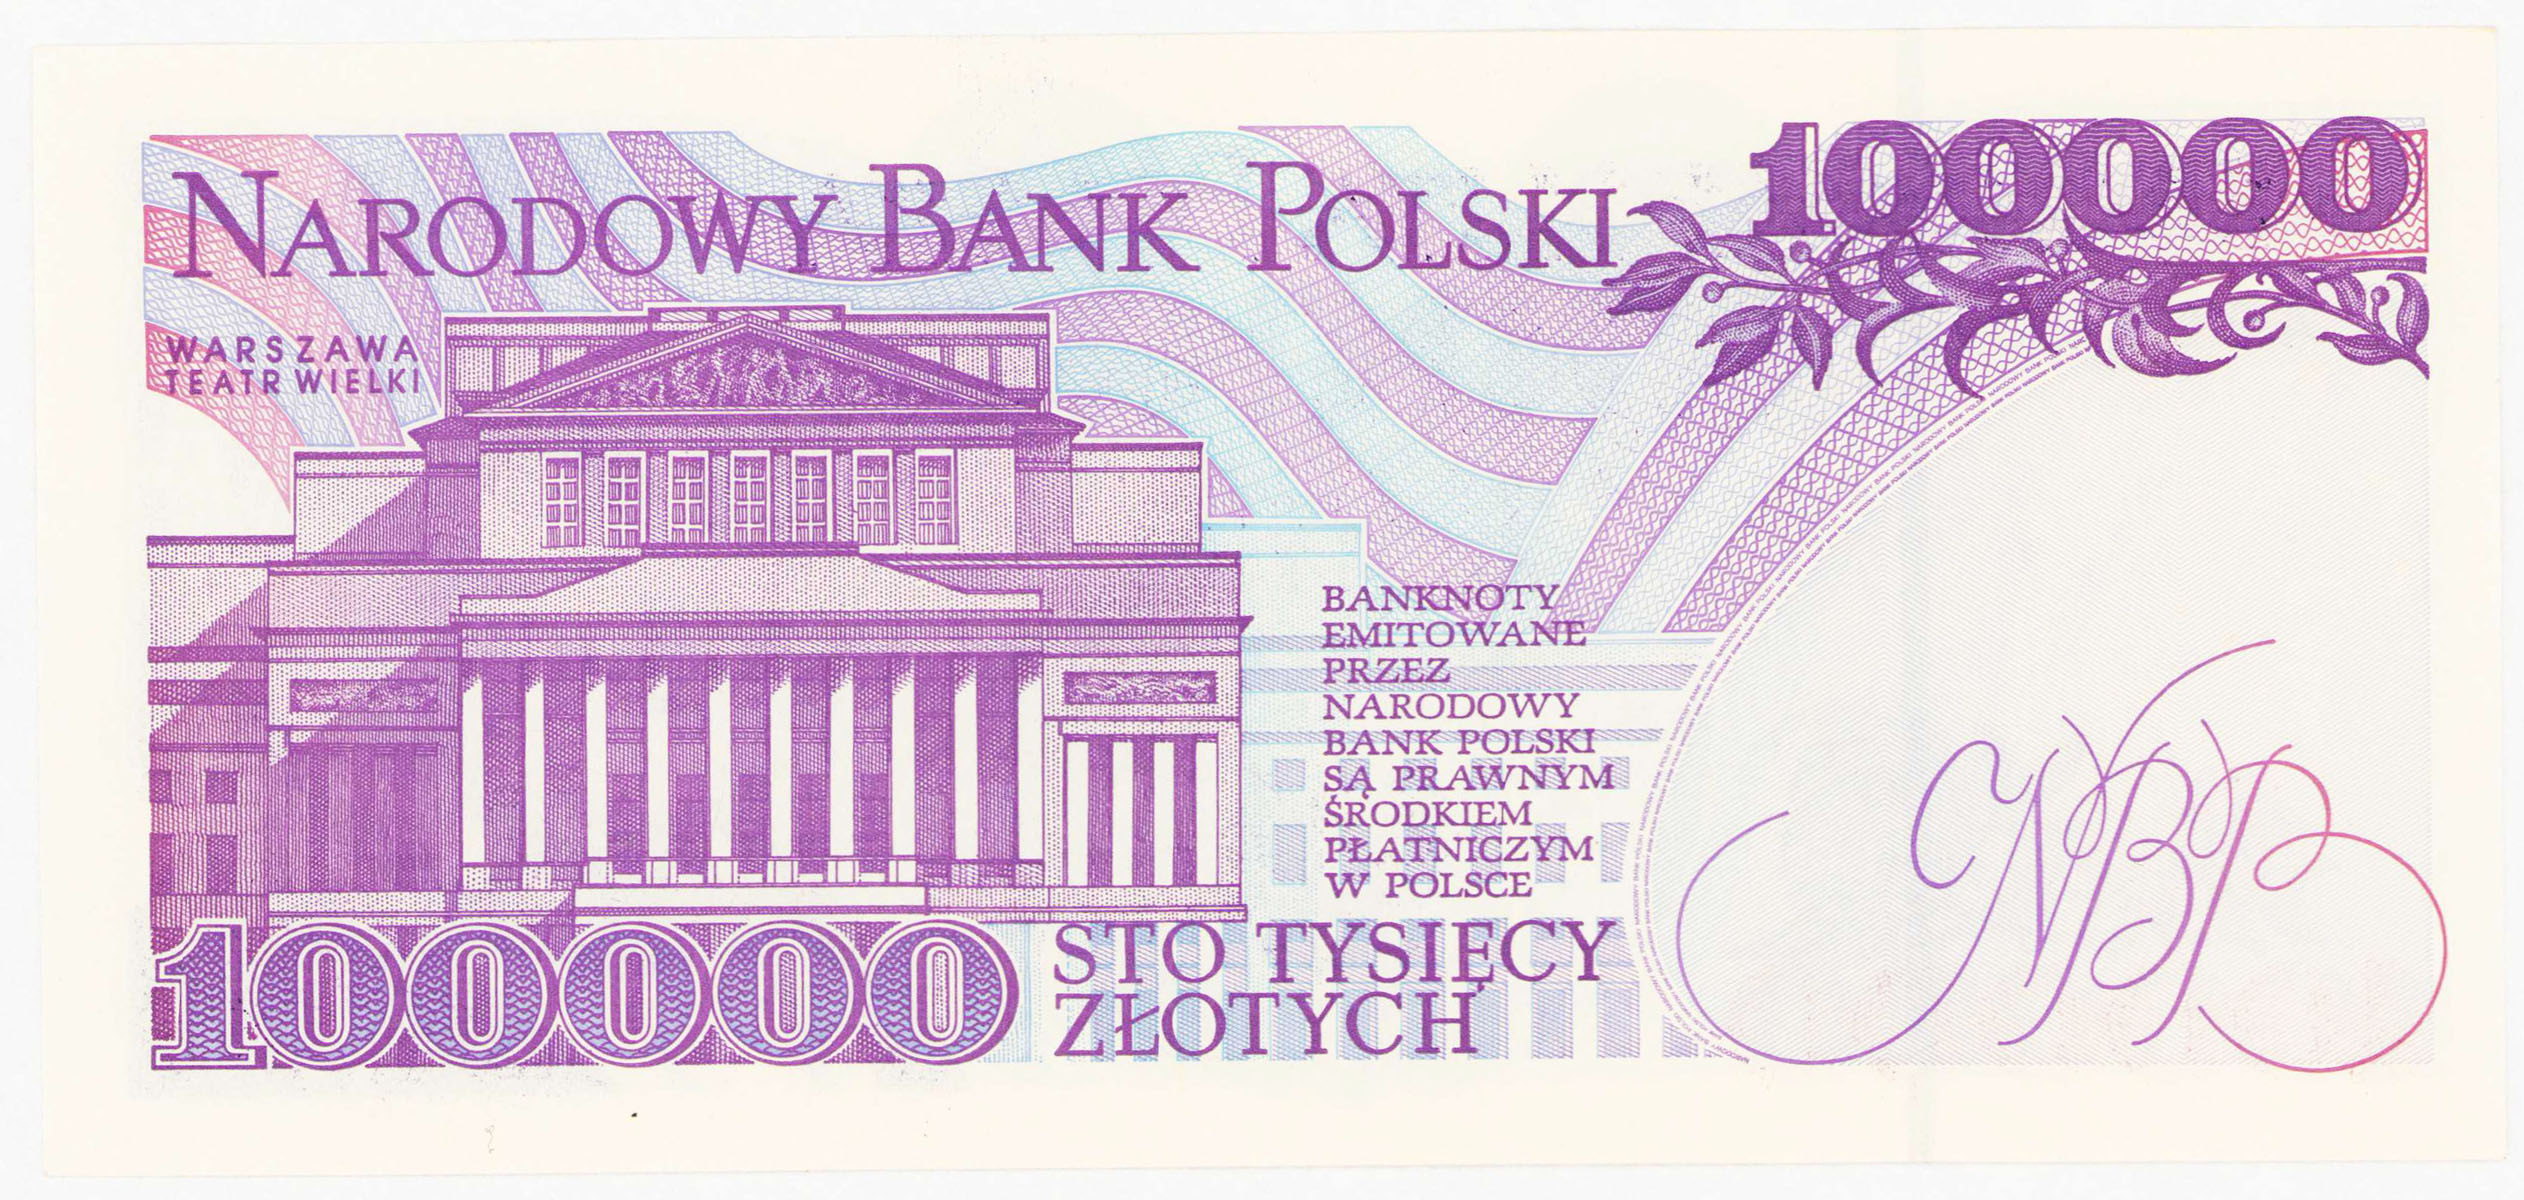 III RP. 100.000 złotych 1993 seria A - PIERWSZA SERIA